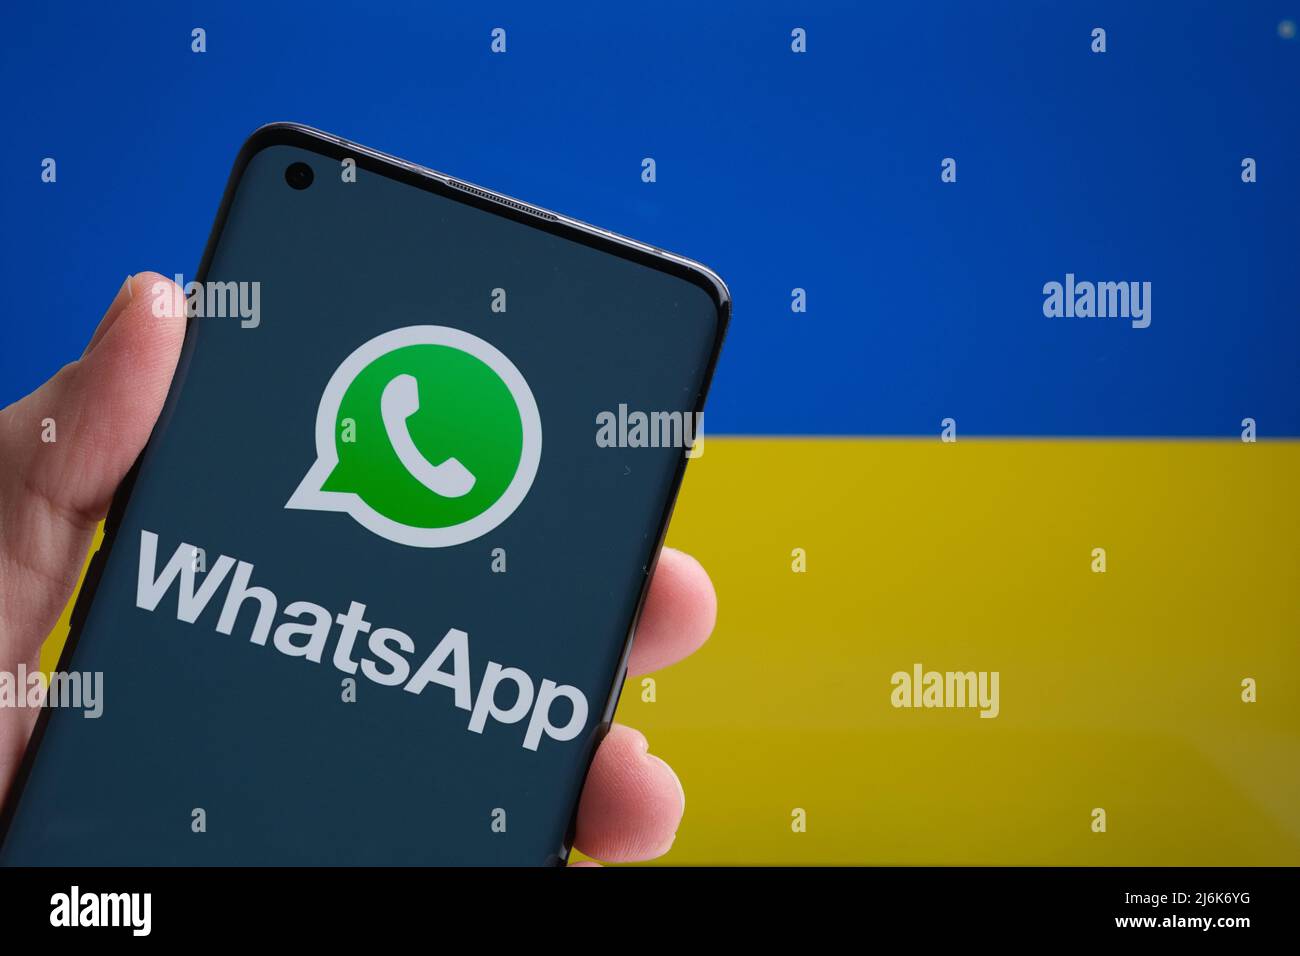 Logo de l'application WhatsApp sur le smartphone et drapeau ukrainien sur l'arrière-plan. Concept. Stafford, Royaume-Uni, 20 mars 2022 Banque D'Images